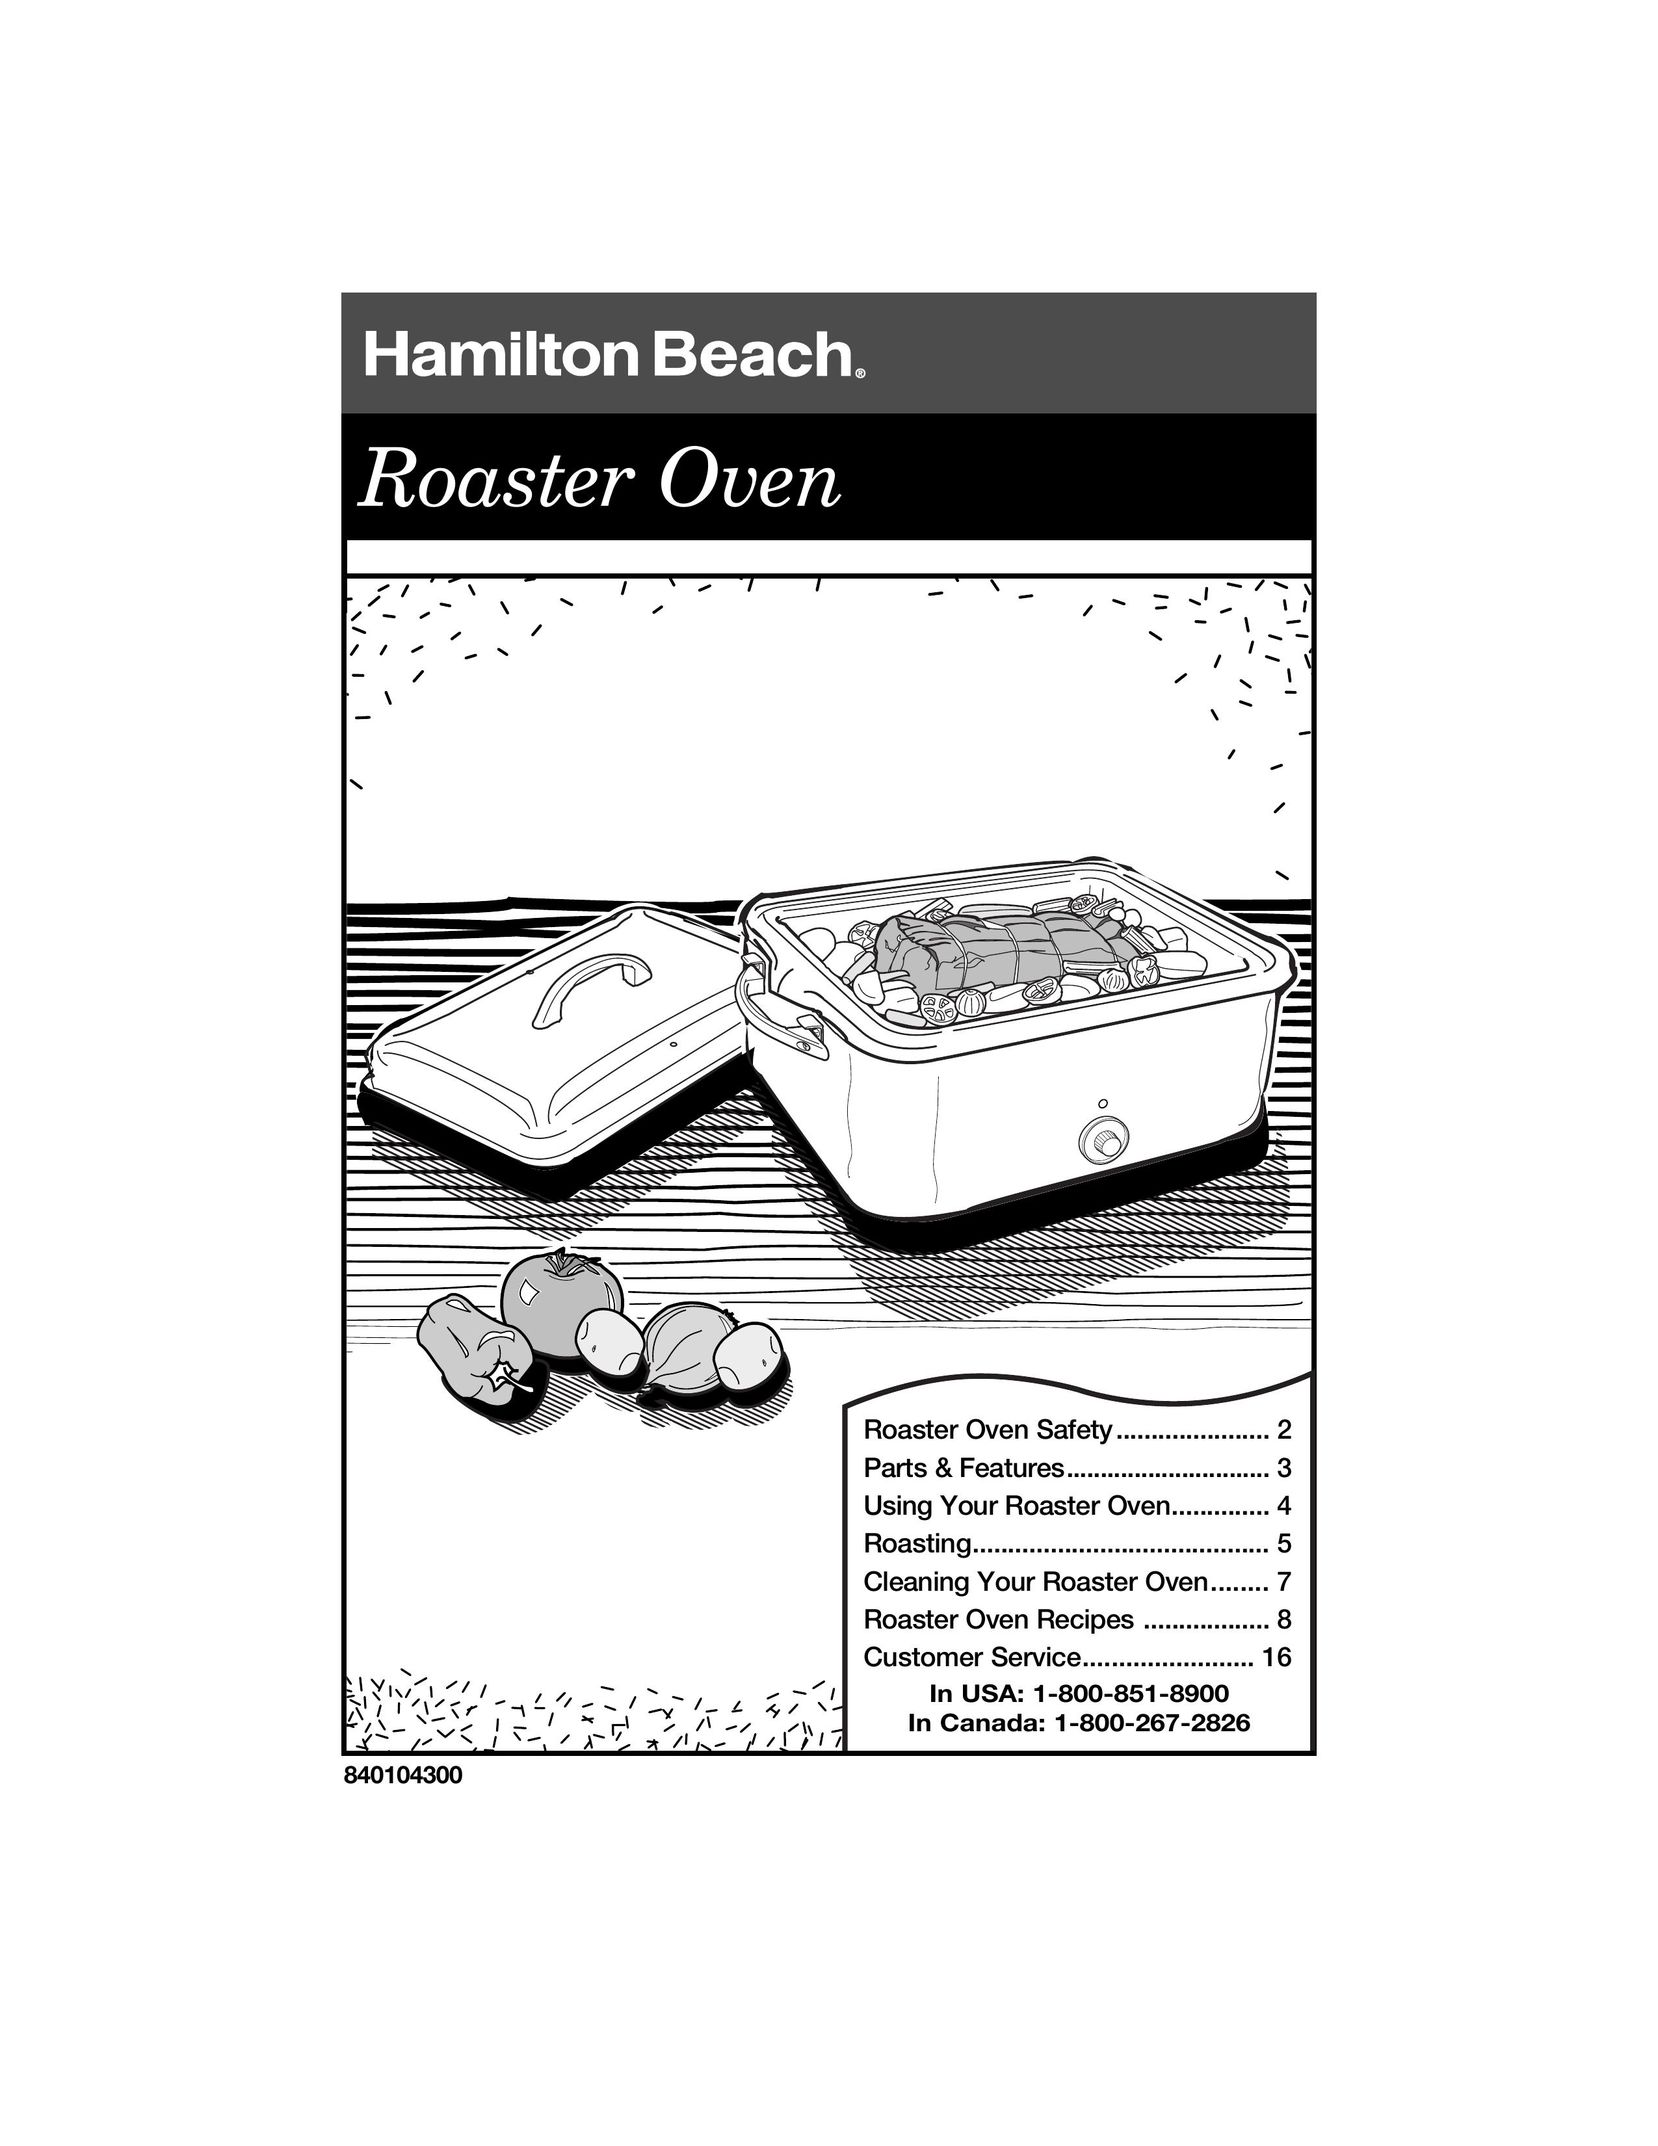 Hamilton Beach 840104300 Oven User Manual